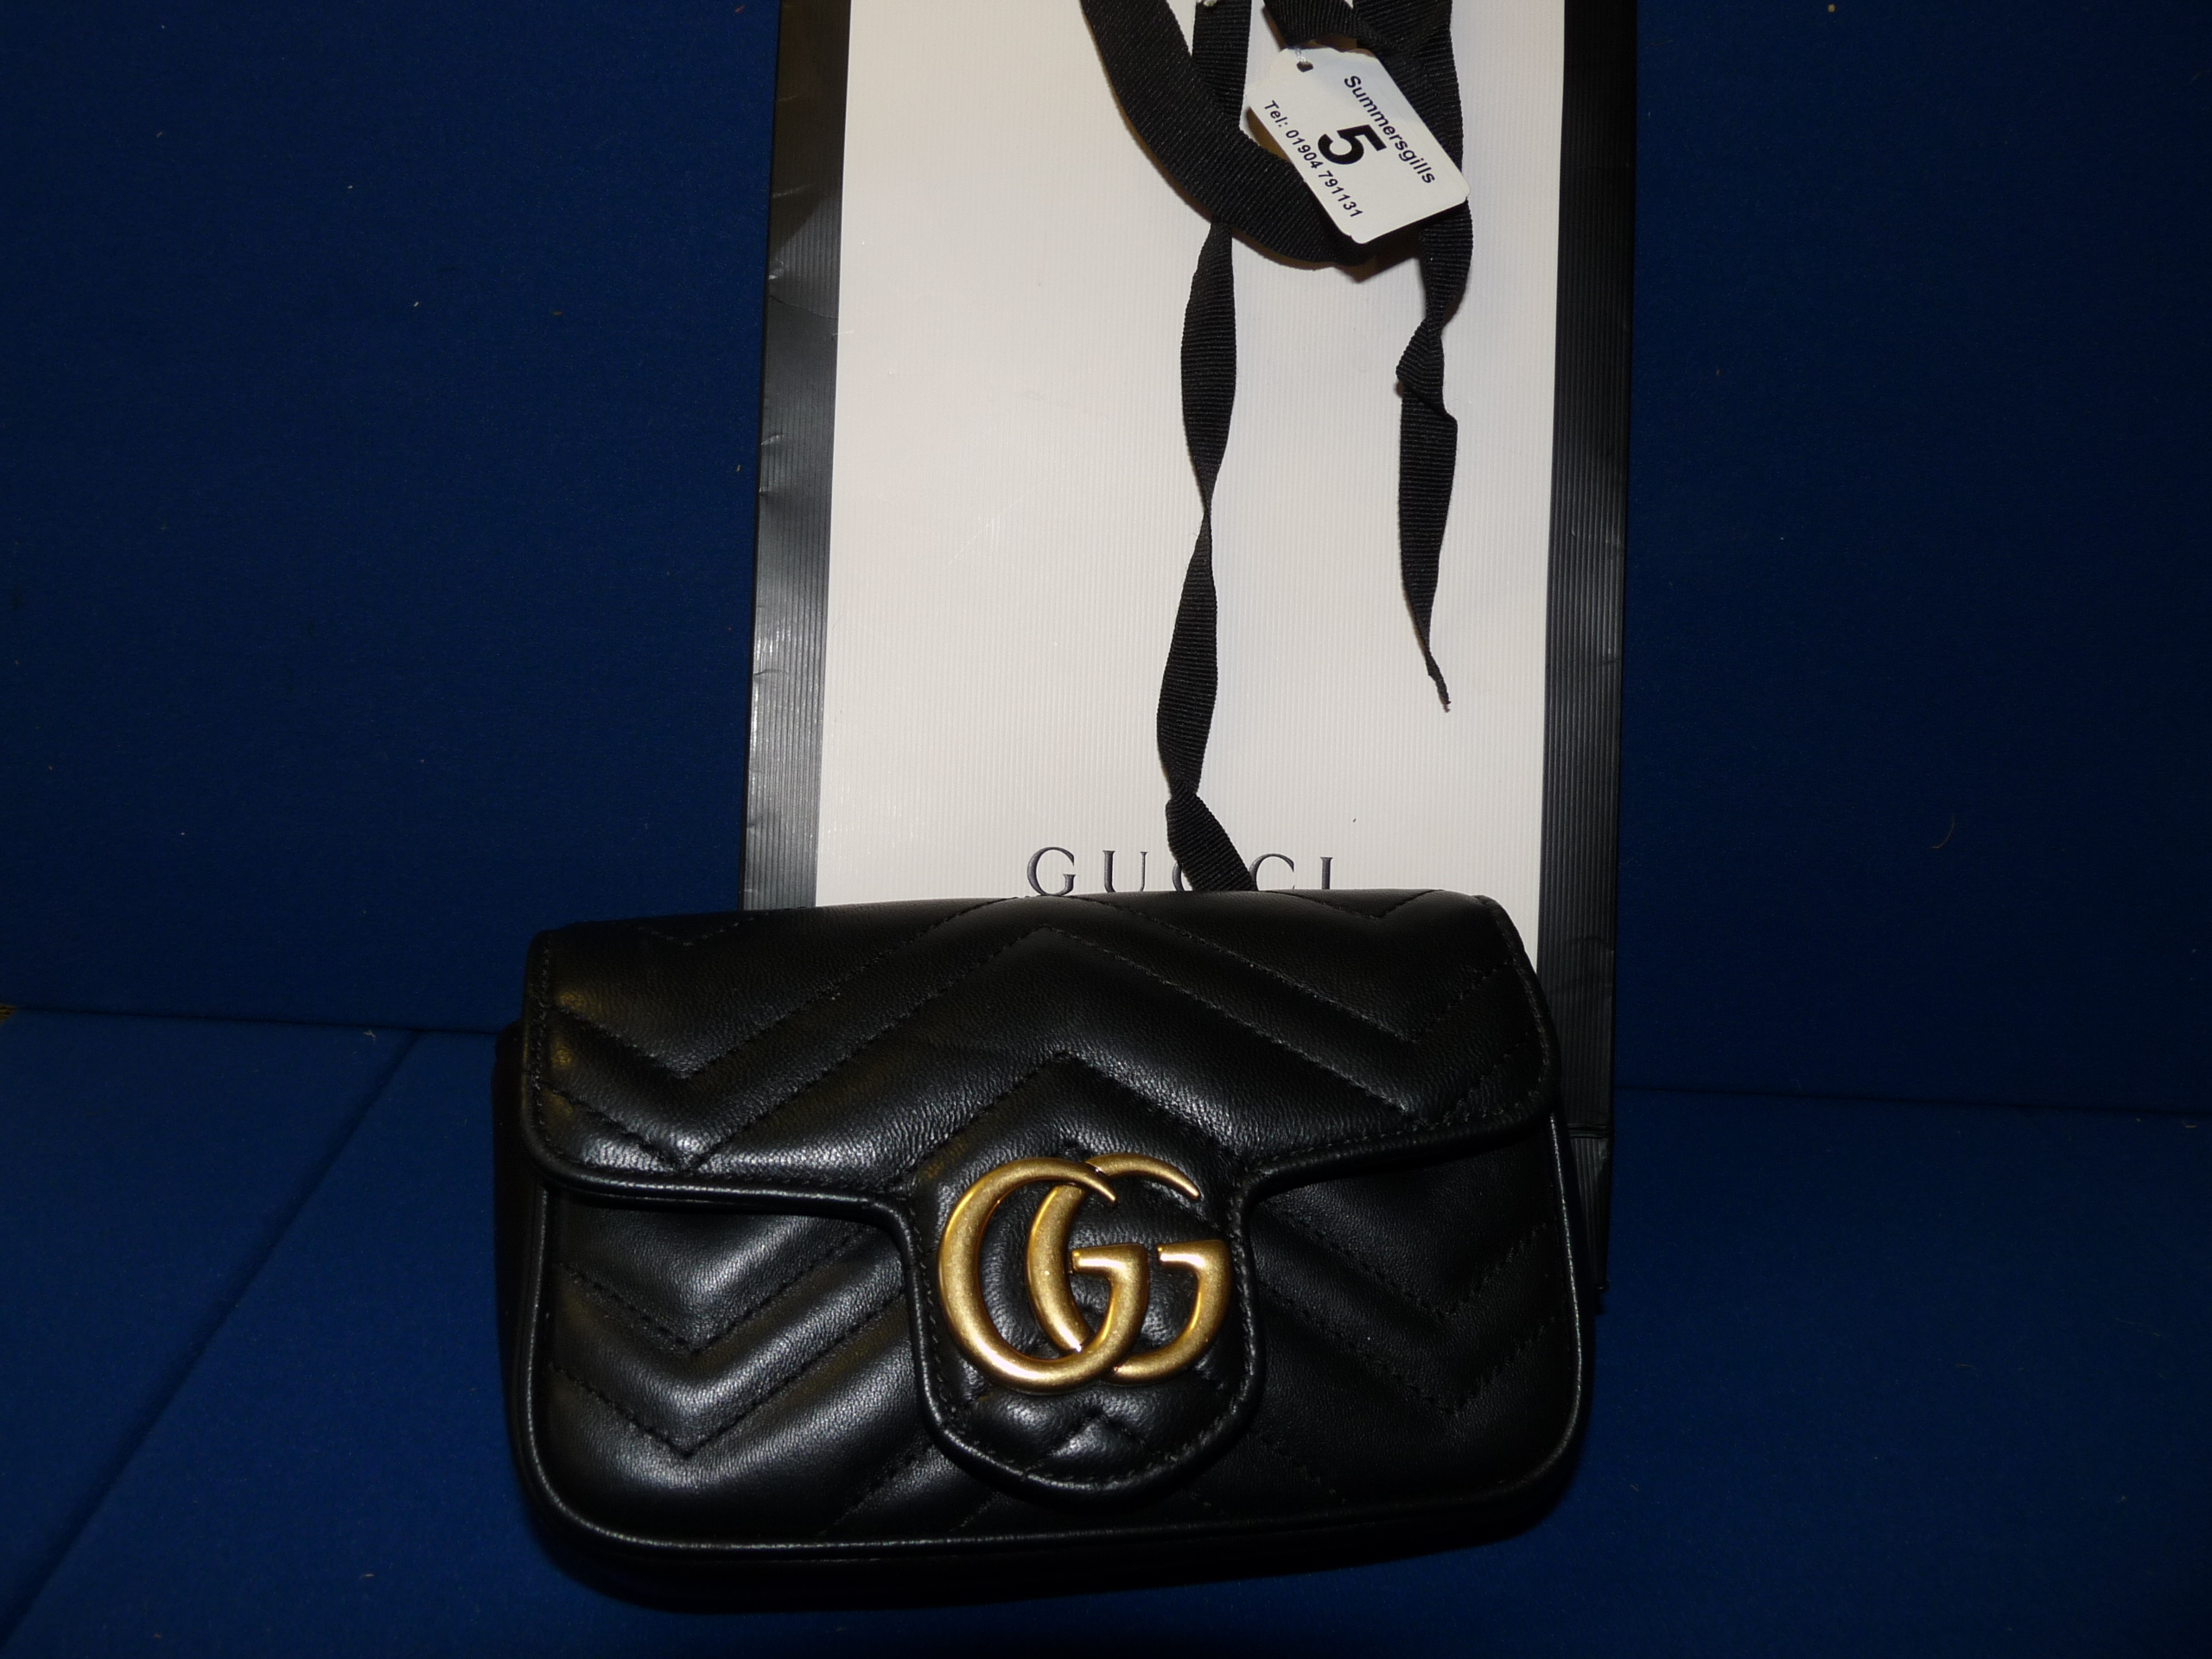 Gucci Marmont Super mini bag in Black Calf skin leather H 4" x 6.5" x d 1.75" Pre owned grade A-